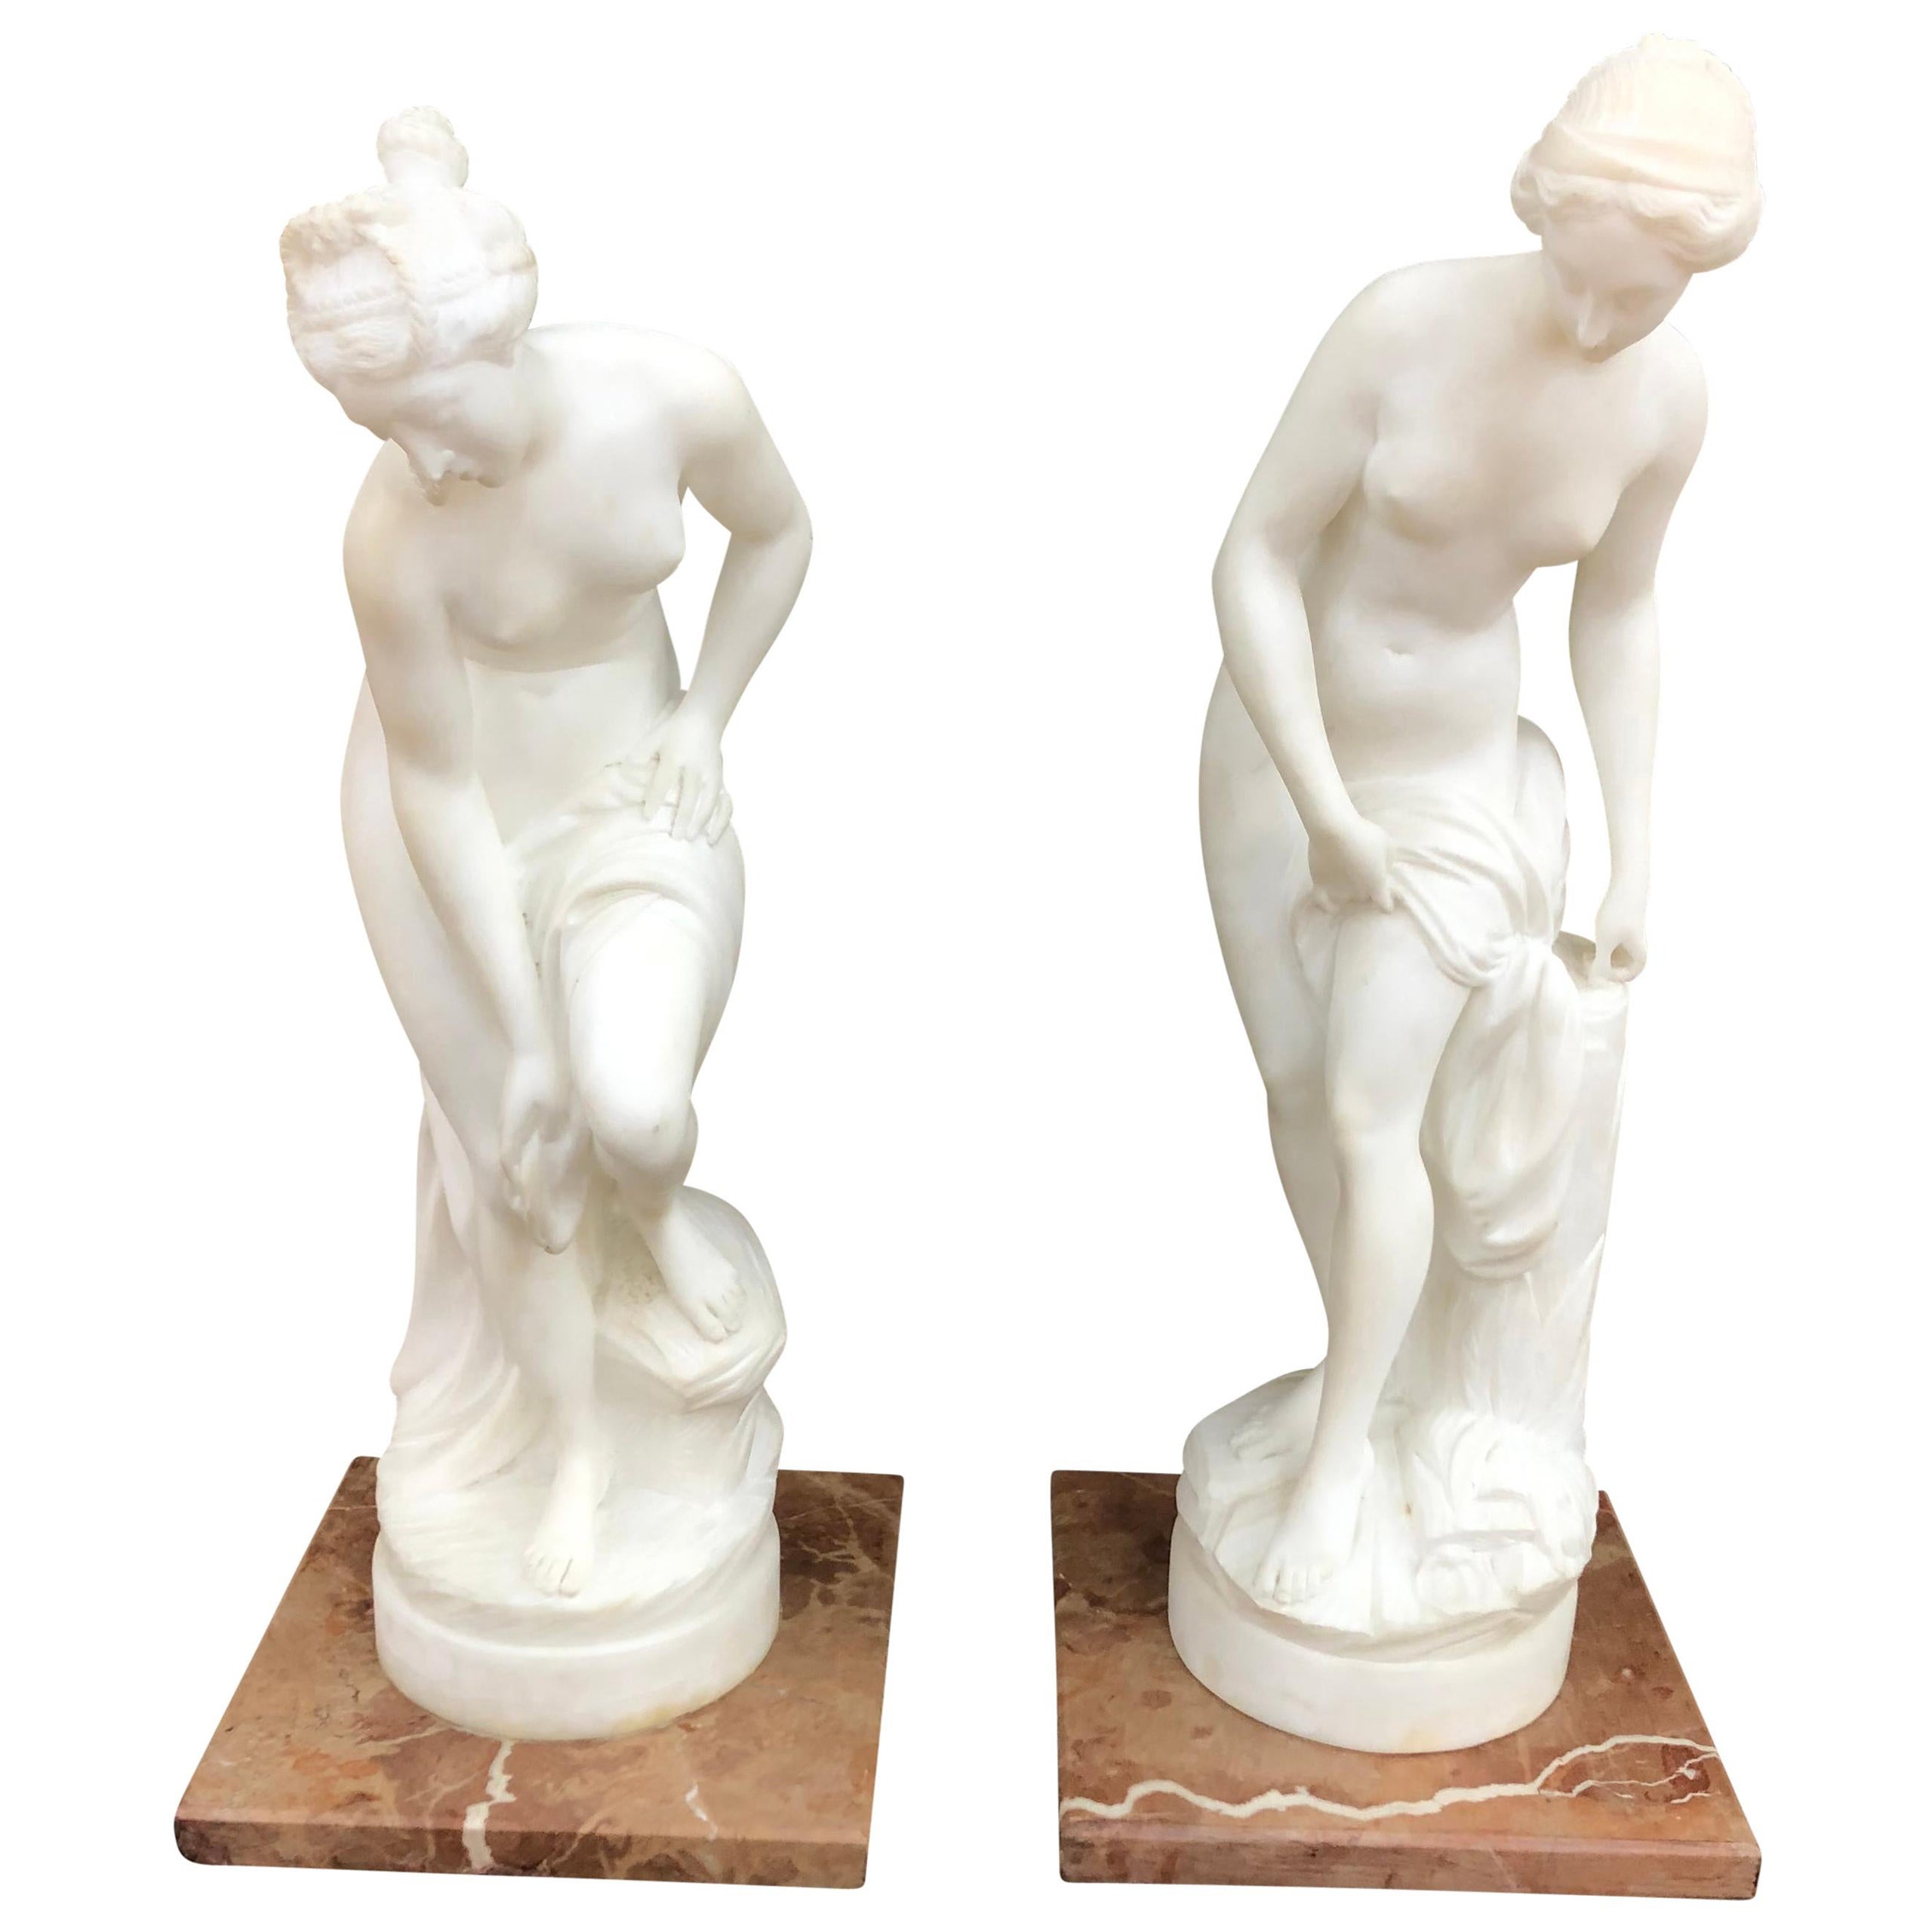 Pair of Antique Italian Marble Sculpture of Classical Female Nude Figures